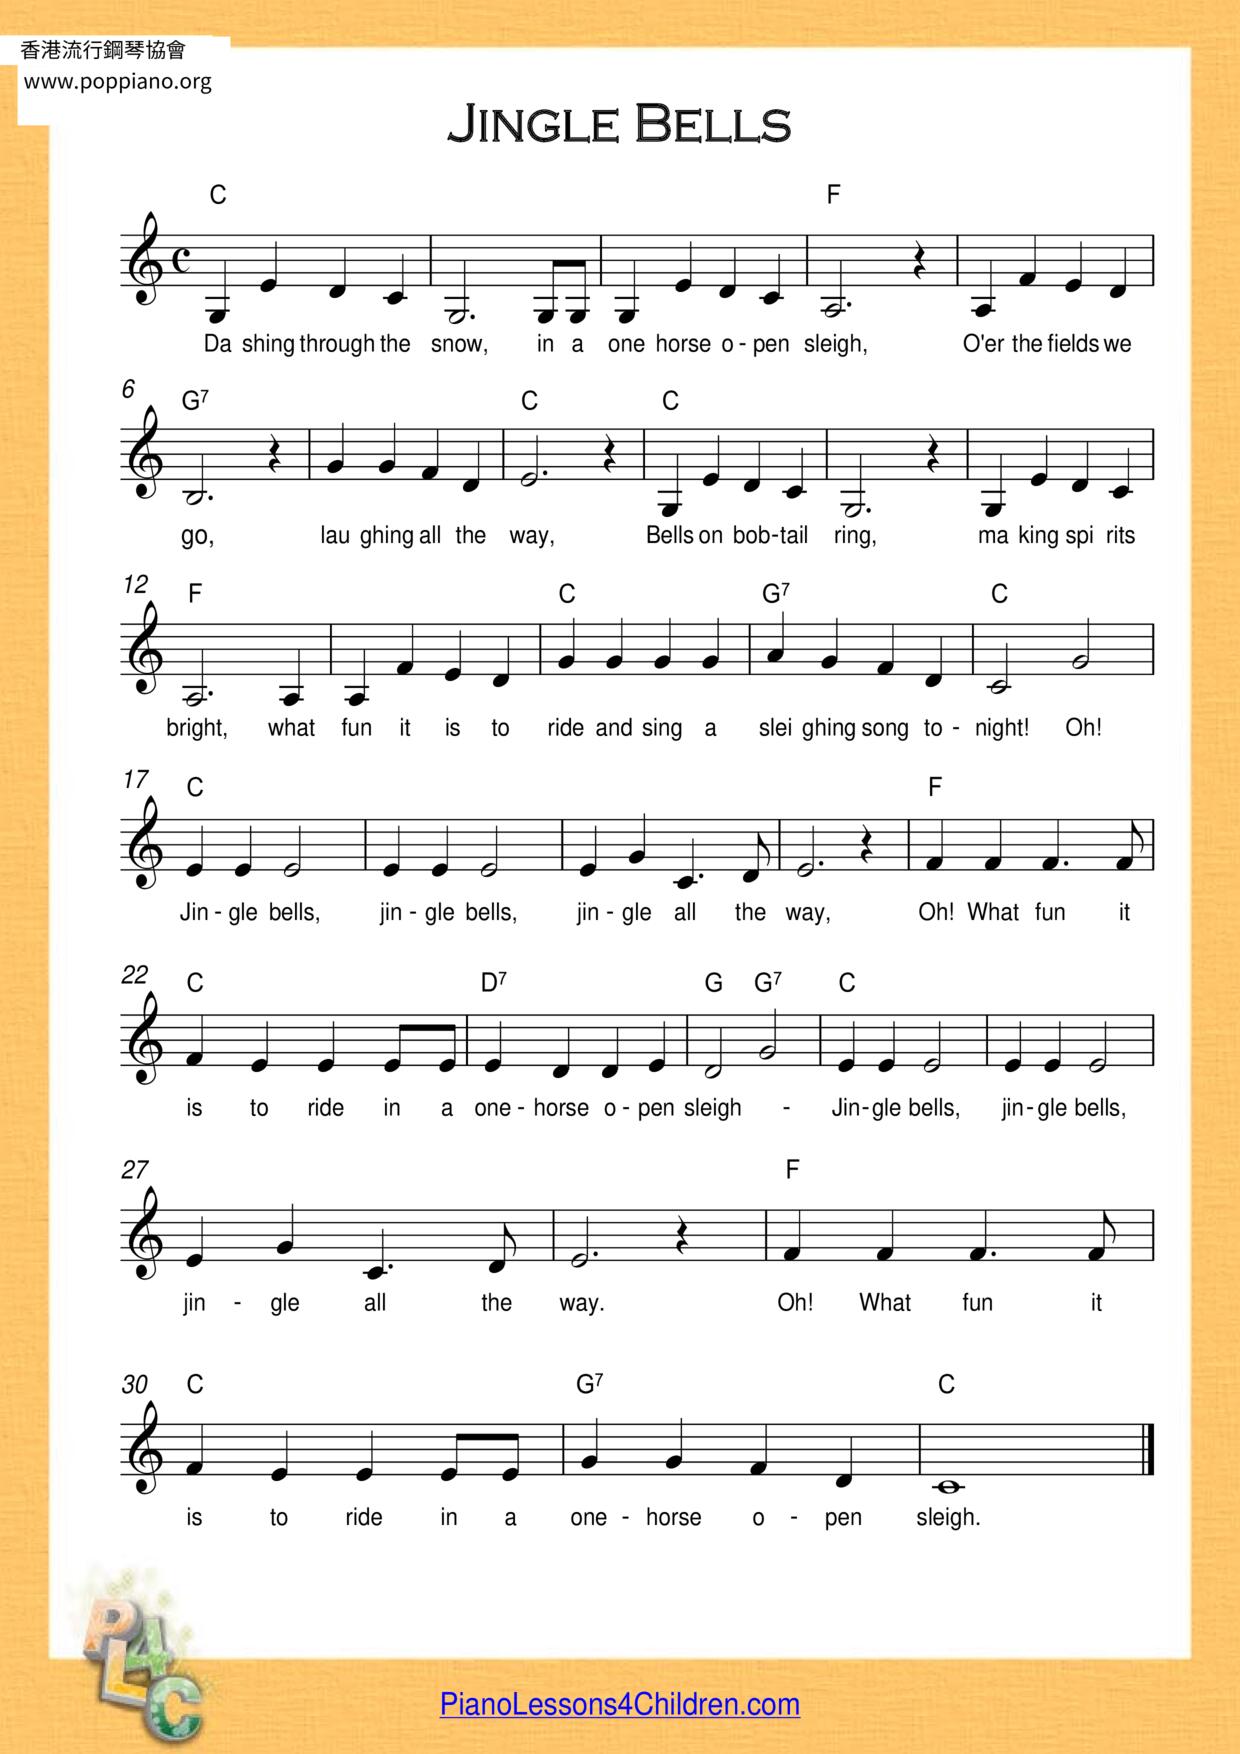 Jingle Bells Waltz Score